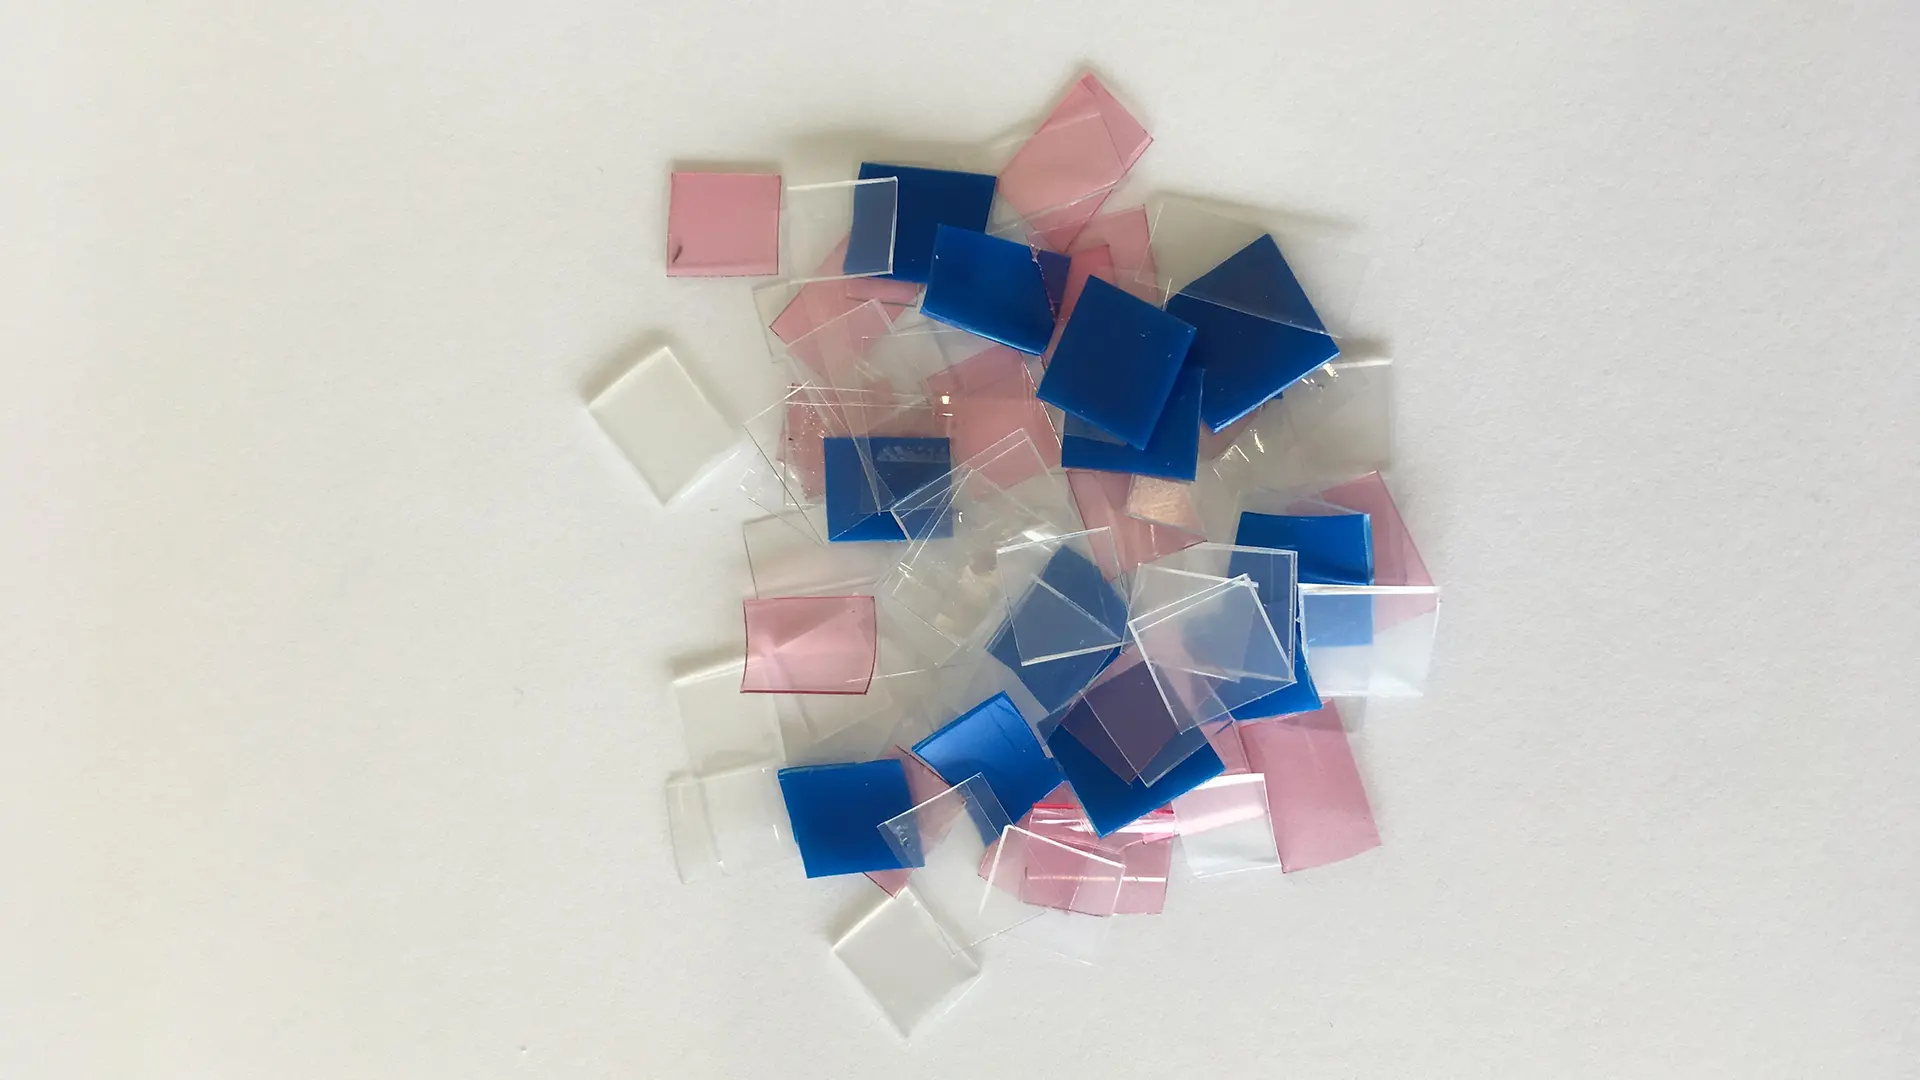 małe niebieskie, różowo-białe i przezroczyste plastikowe sadzonki